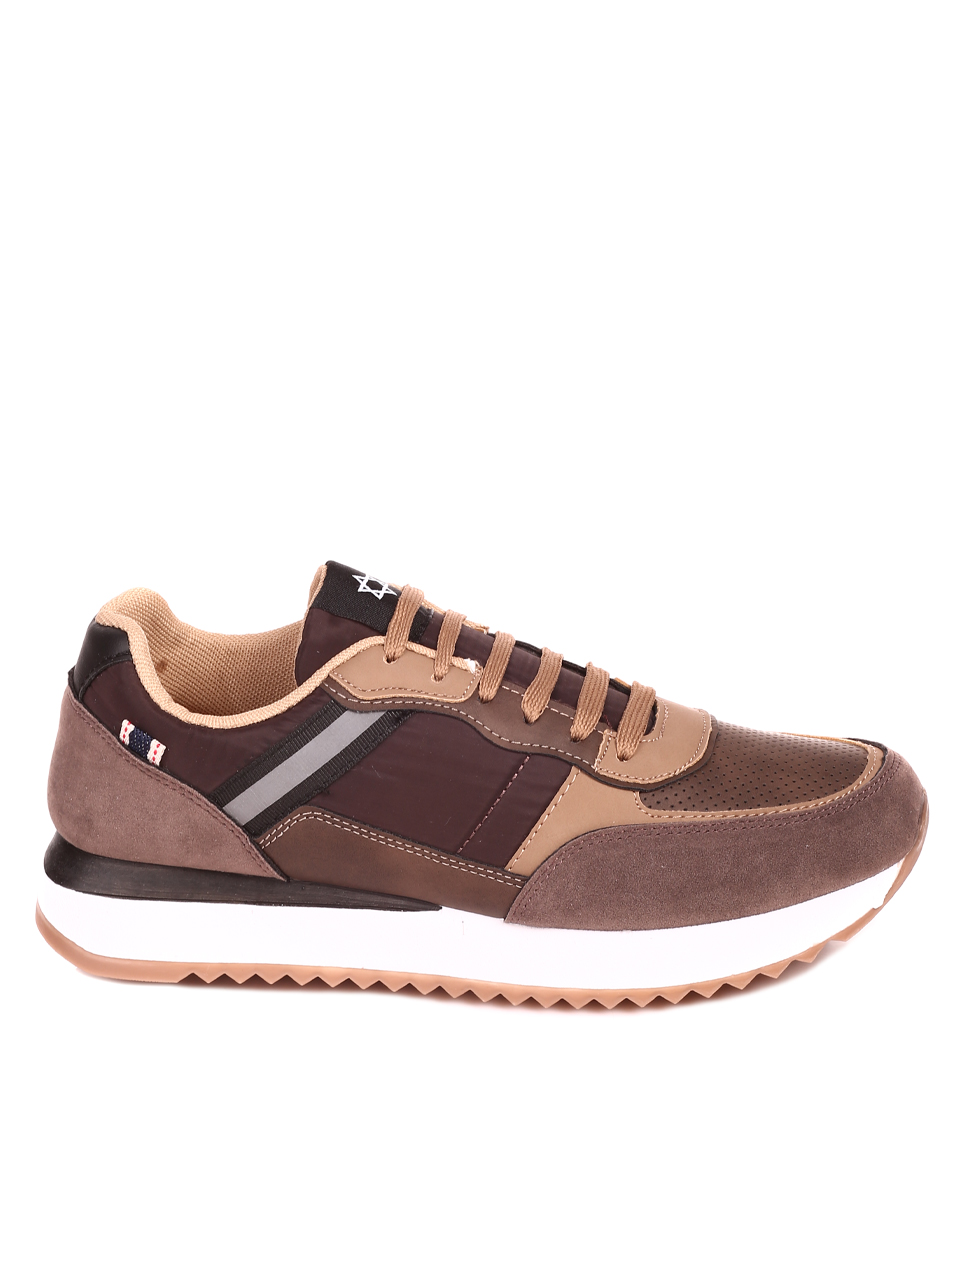 Ежедневни мъжки обувки в кафяво 7U-22595 brown